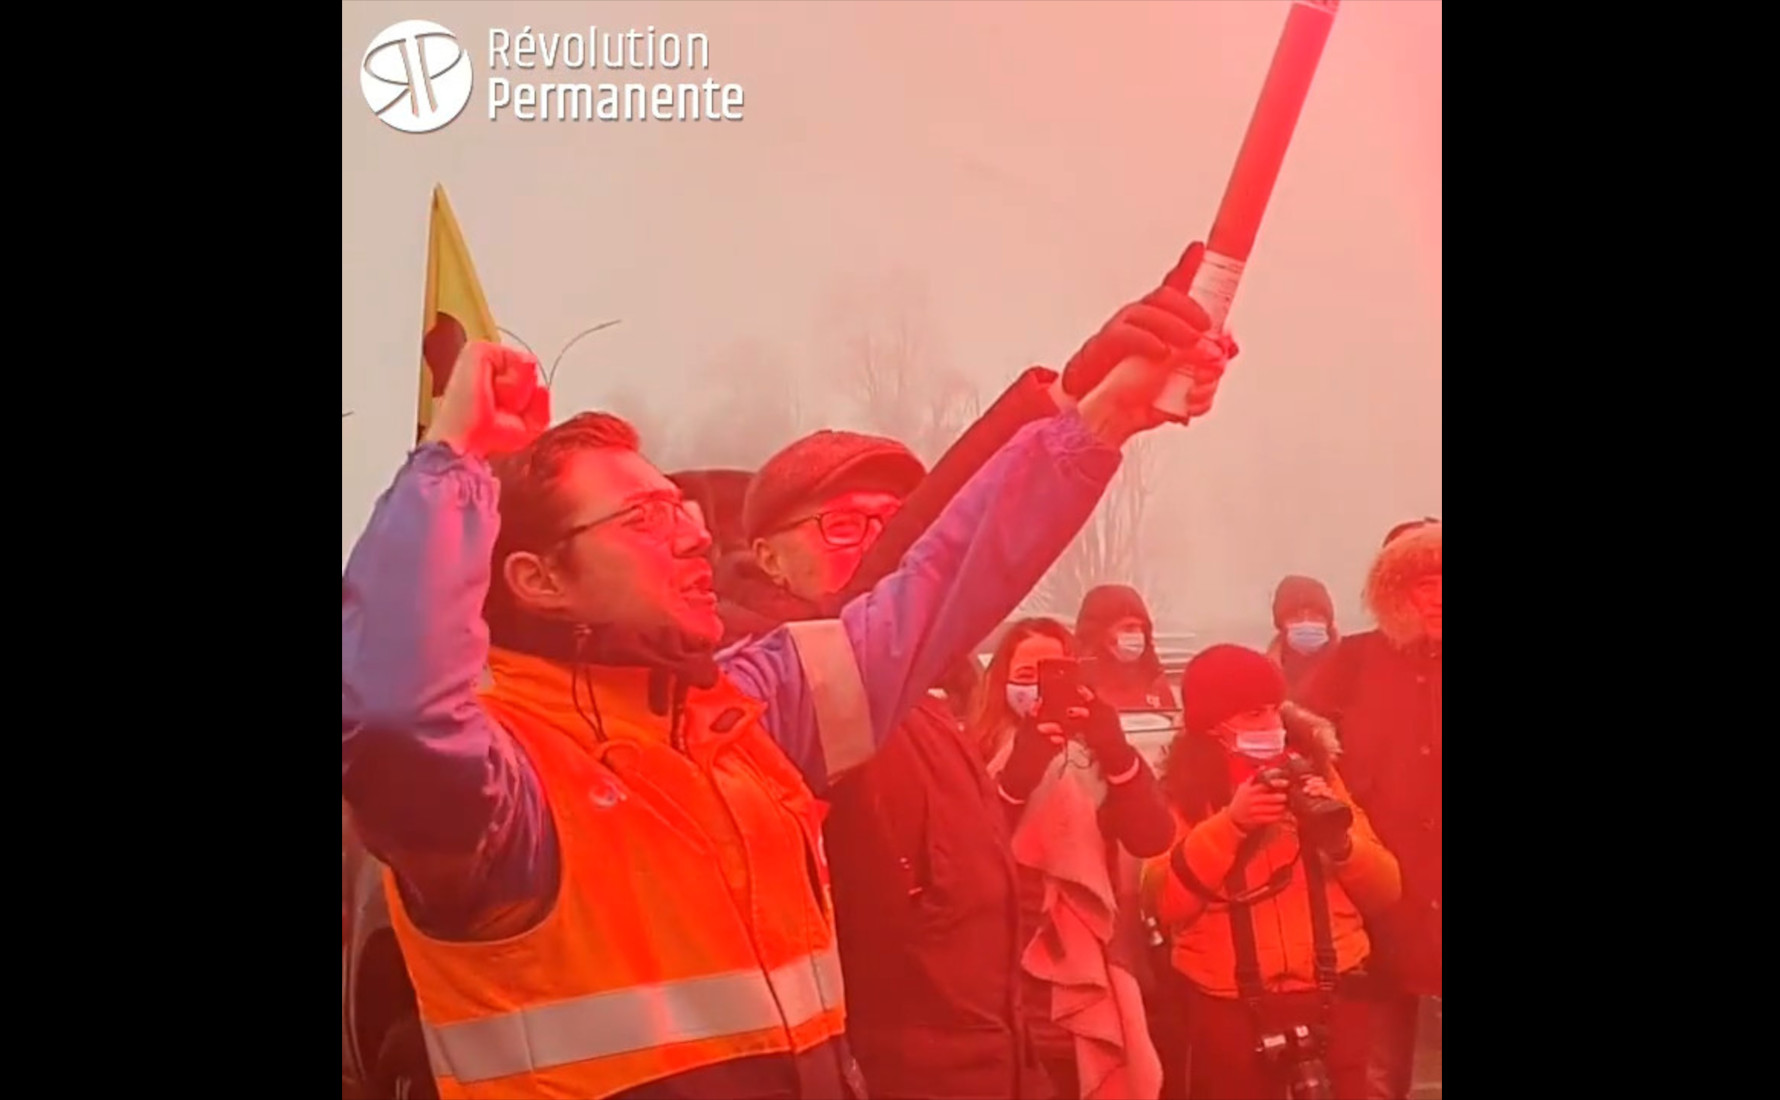 [VIDEO] Reportage vom unbefristeten Streik bei Total in Frankreich